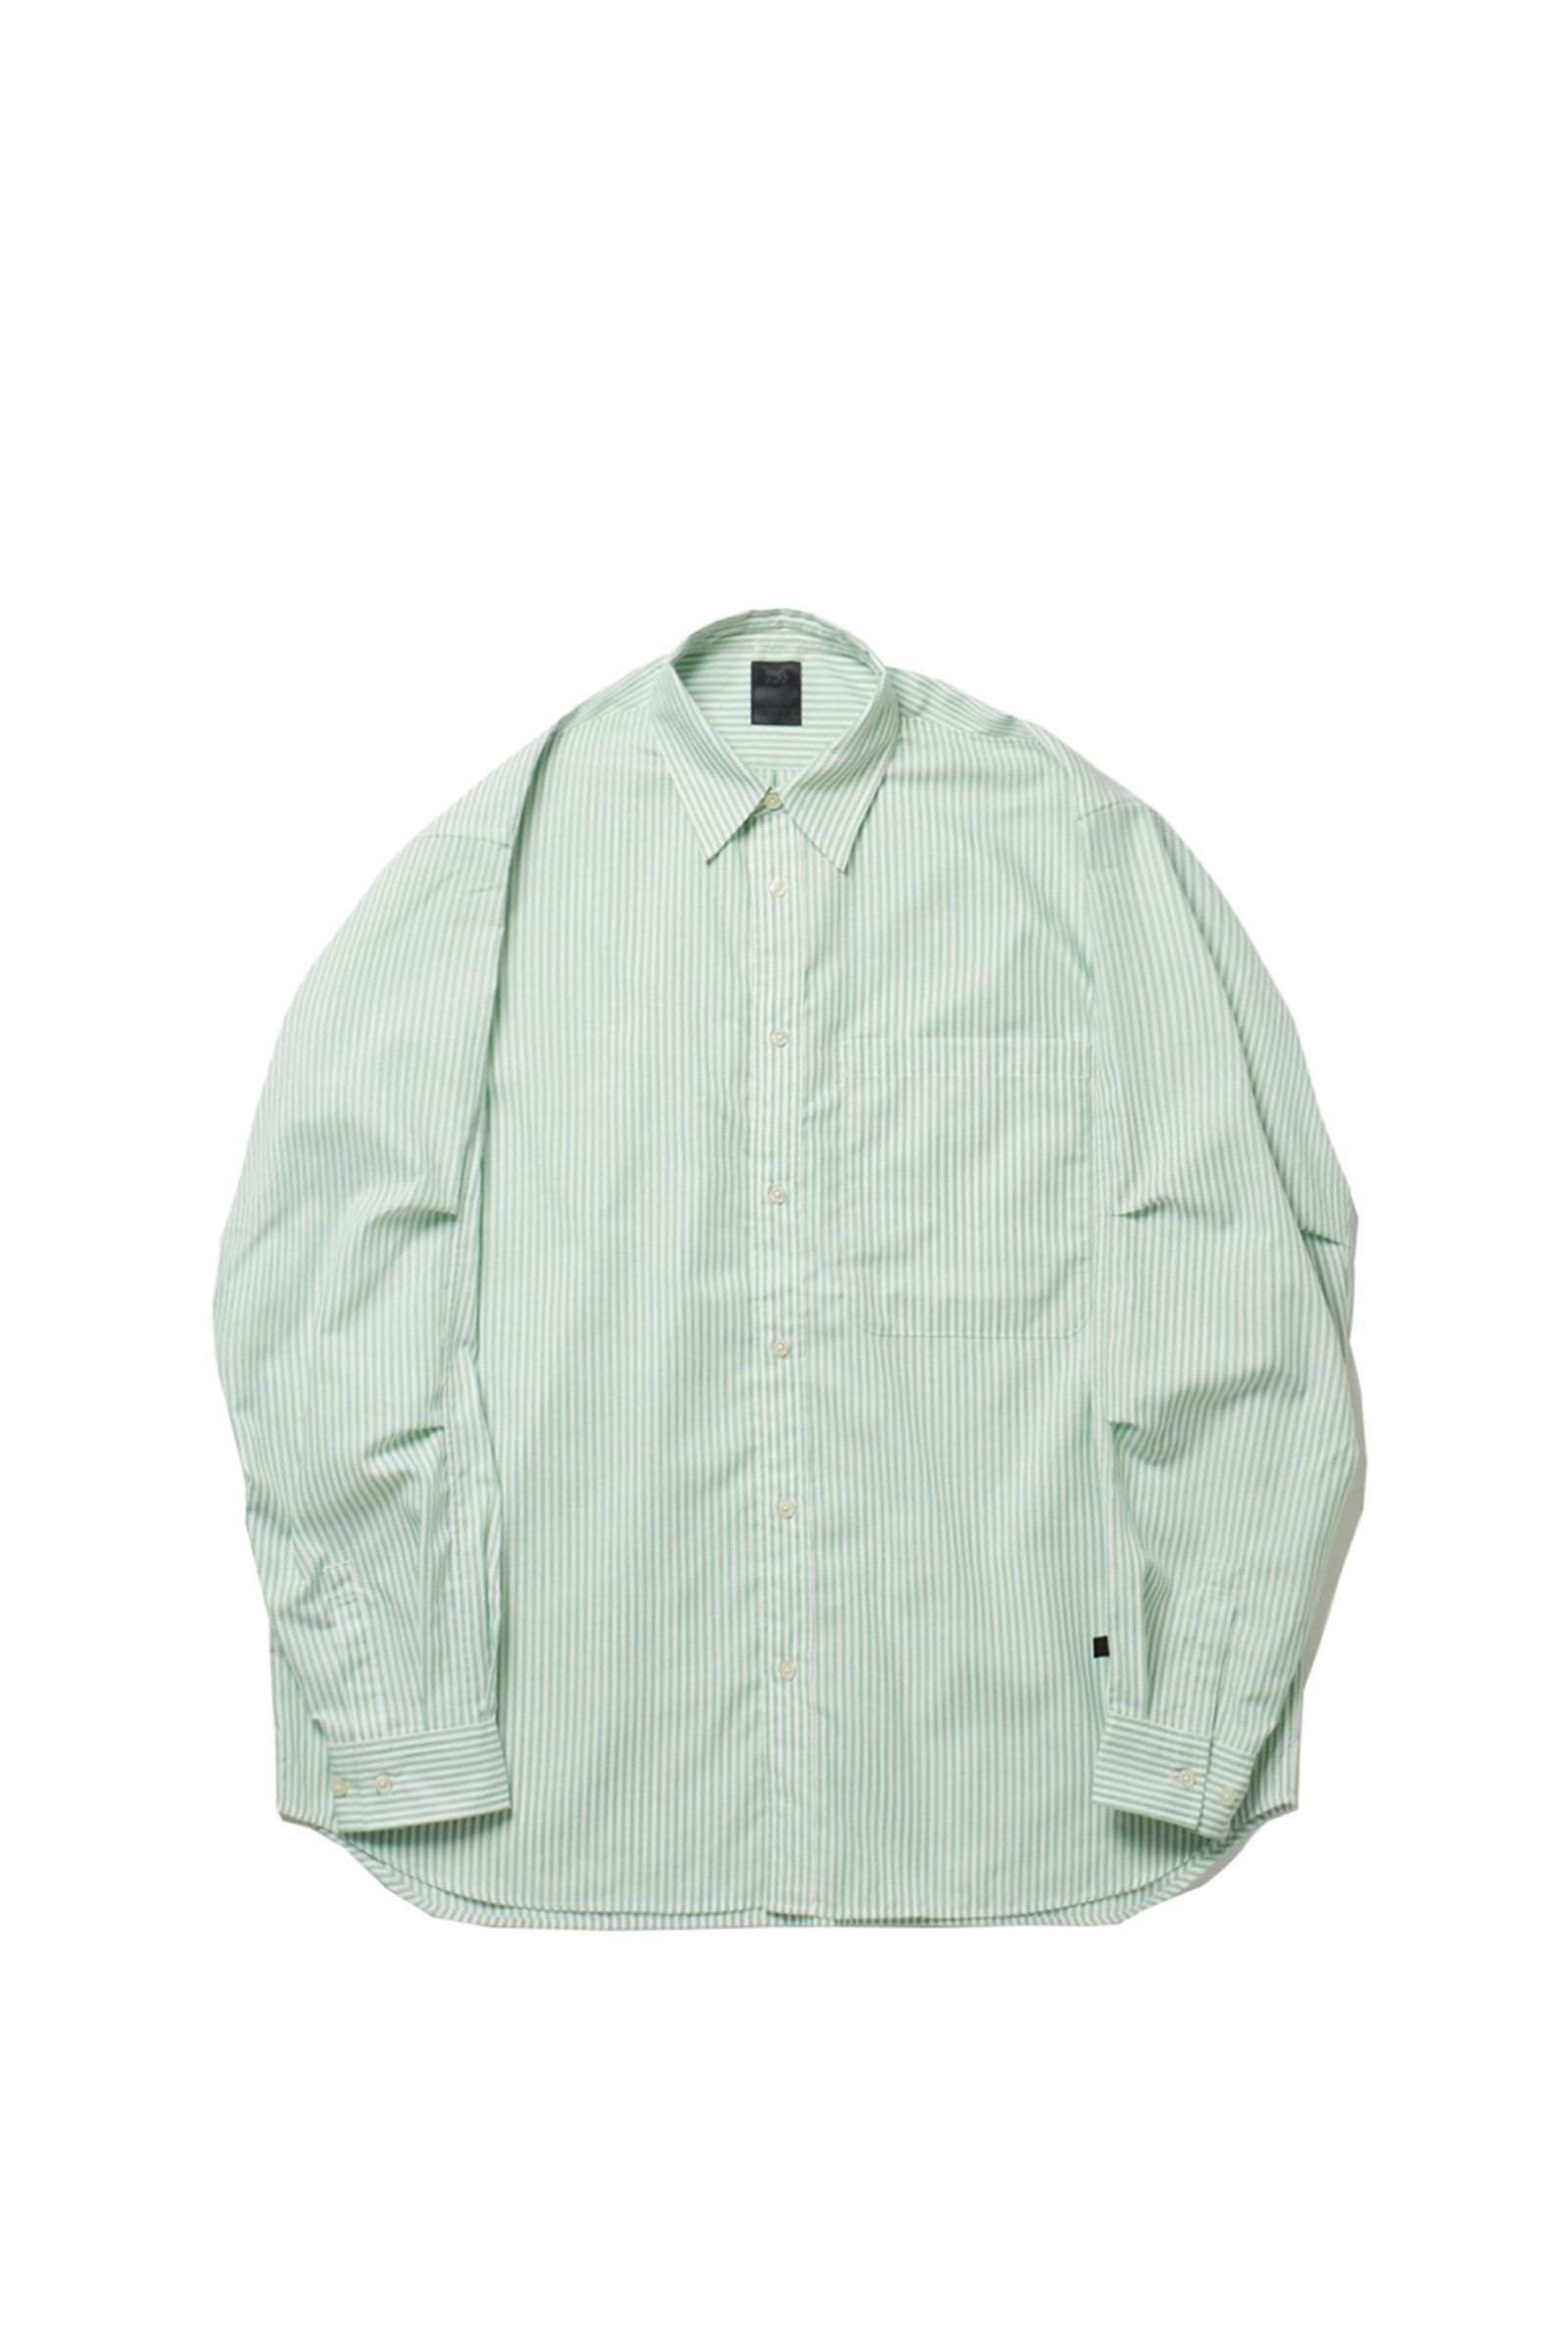 DAIWA PIER39 - tech button down shirts l/s oxford -green stripe